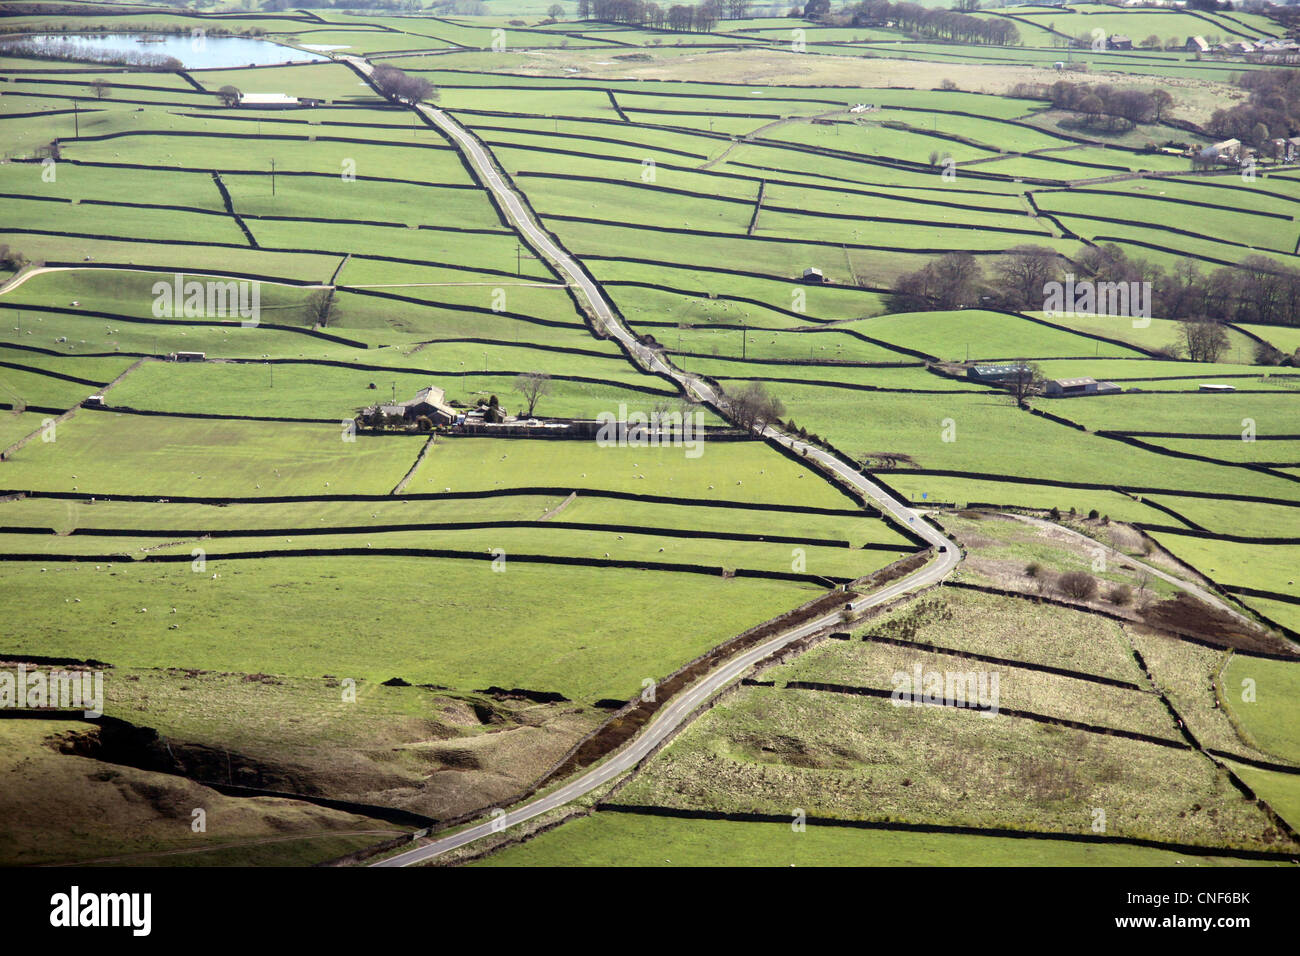 Vista aerea di inglese paesaggio rurale con i campi delimitati da muri in pietra a secco Foto Stock